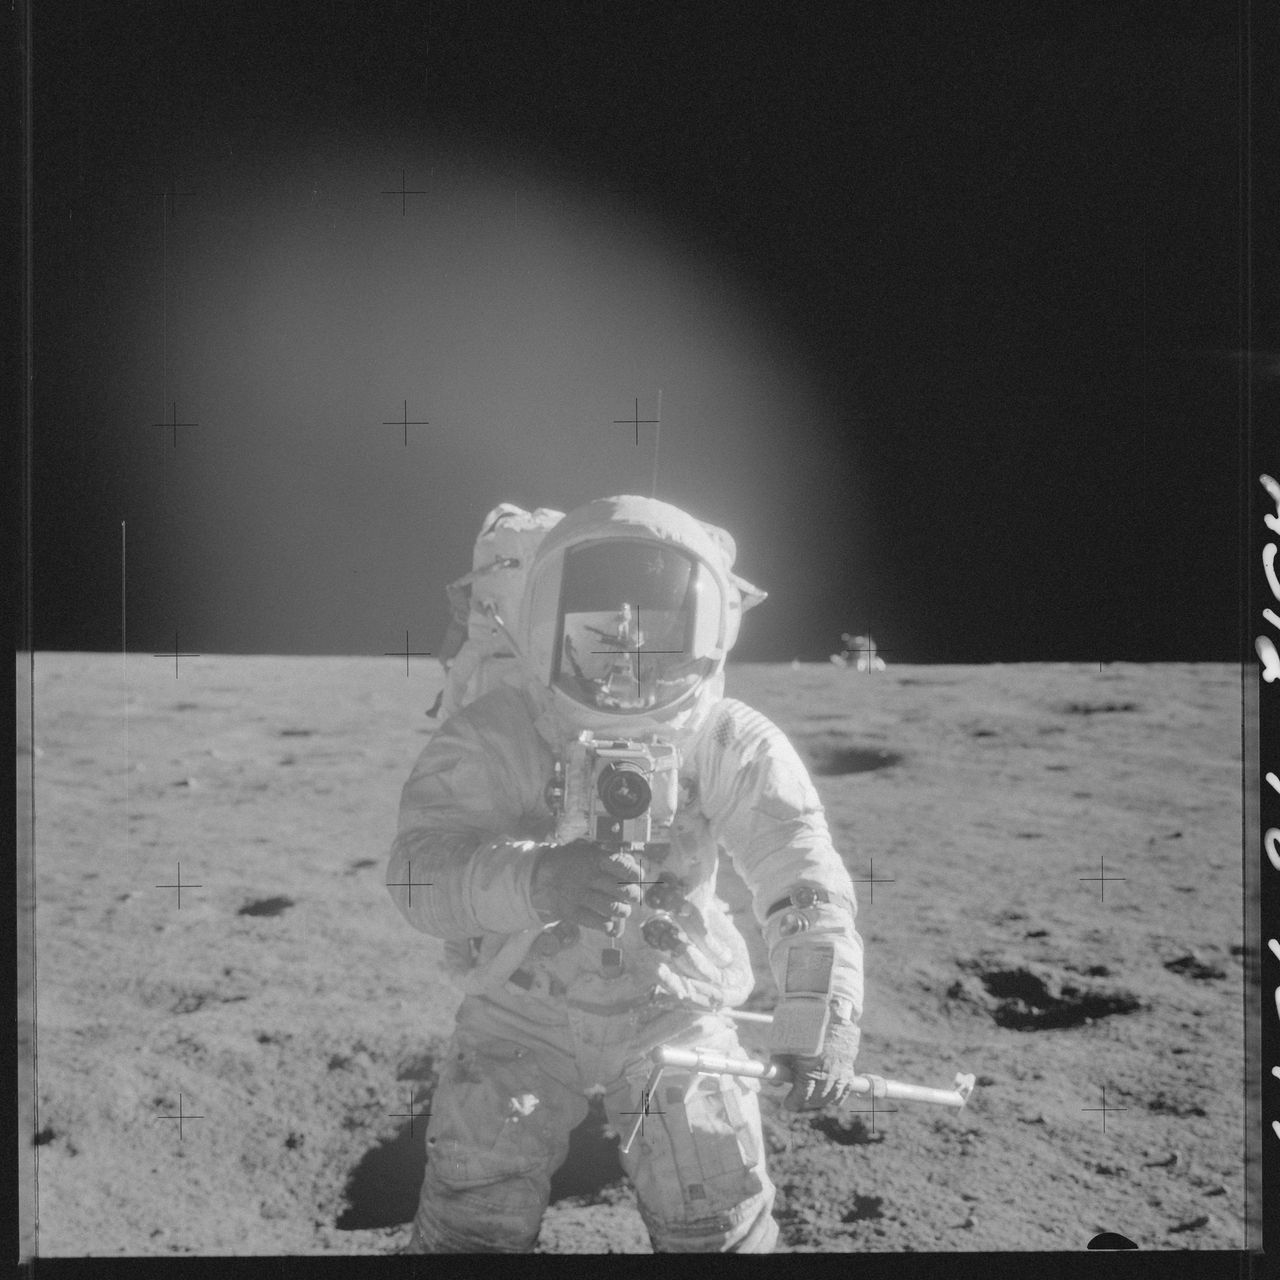 Zdjęcia z kosmosu są zawsze fascynujące, głównie dzięki dość rzadkiej perspektywie z jakiej są wykonane. NASA opublikowała bardzo obszerną galerię zdjęć z misji Apollo, którą można obejrzeć na Flickr.